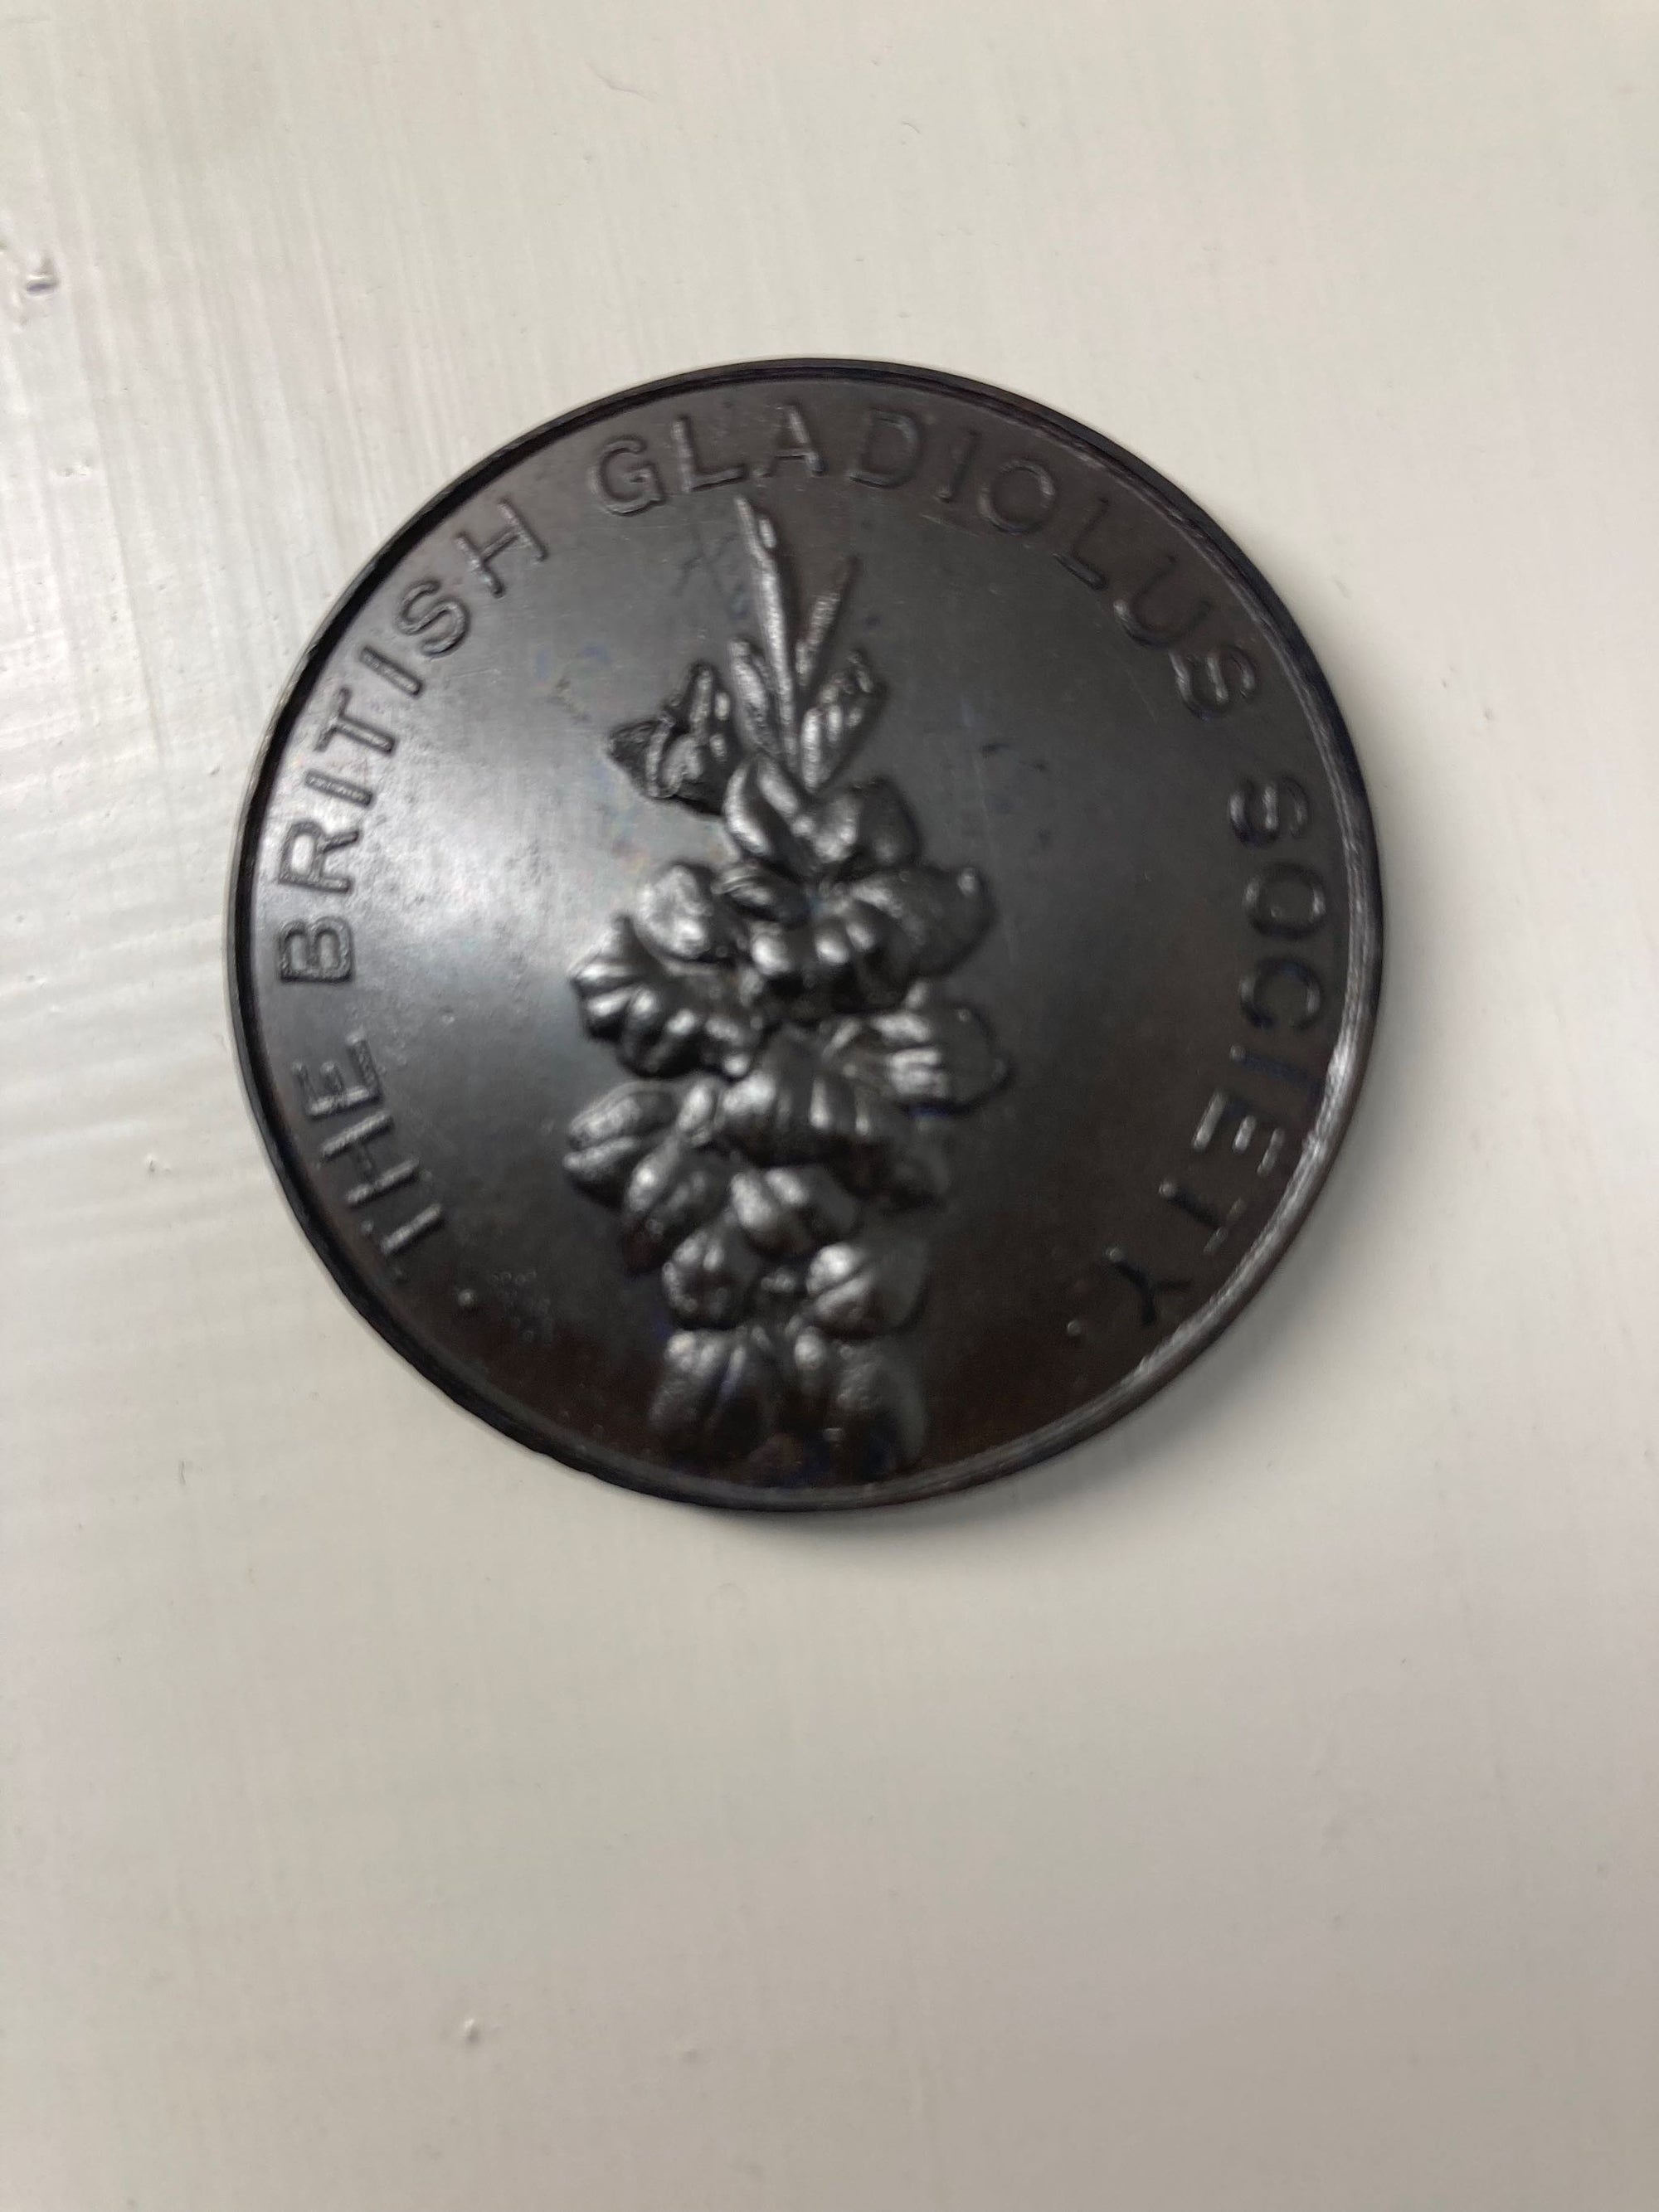 Gladiolus Society Medal